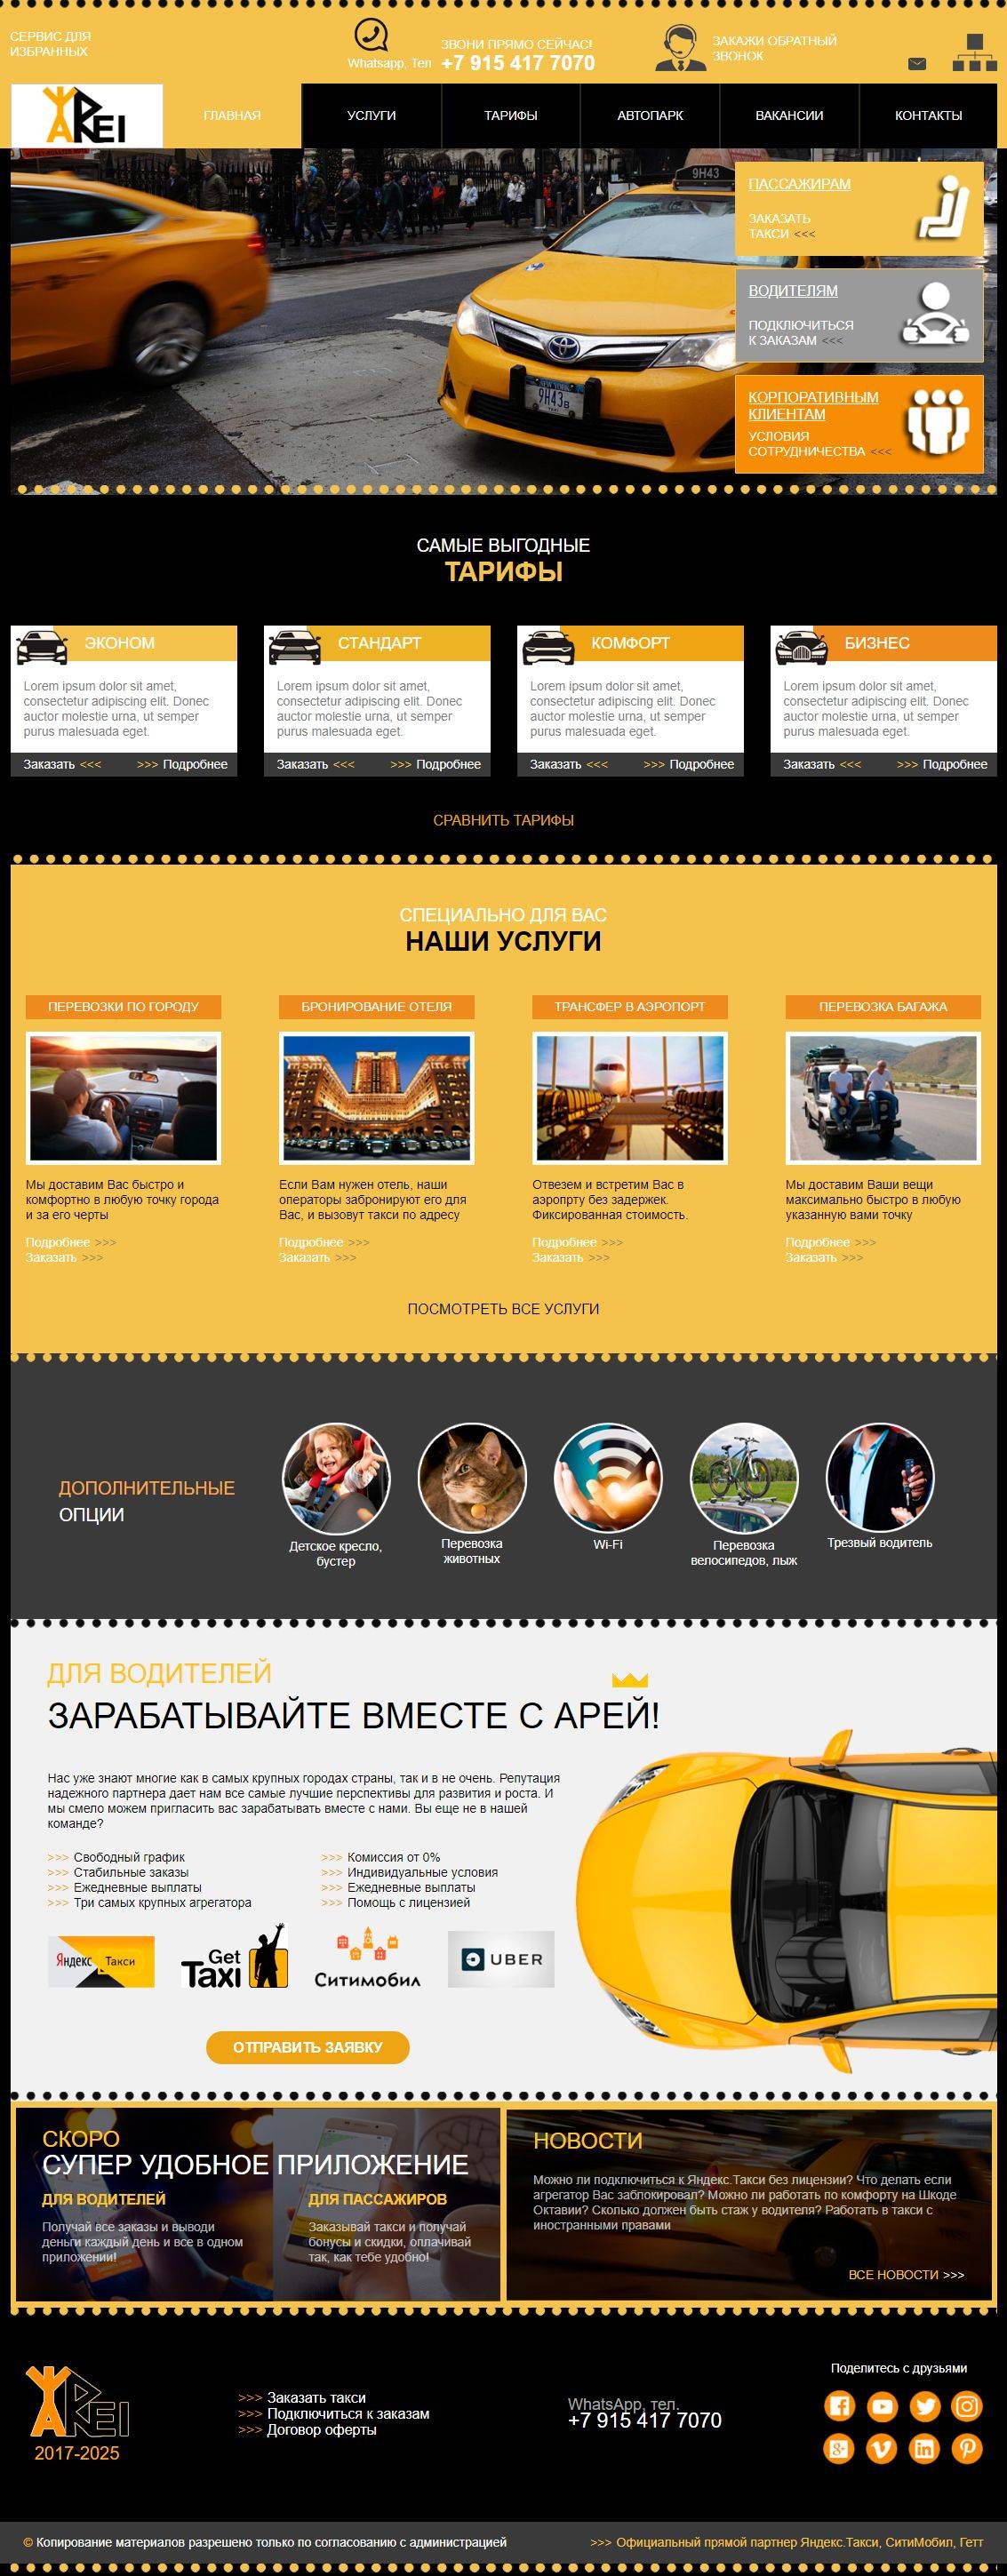 Разработка главной страницы сайта такси арей